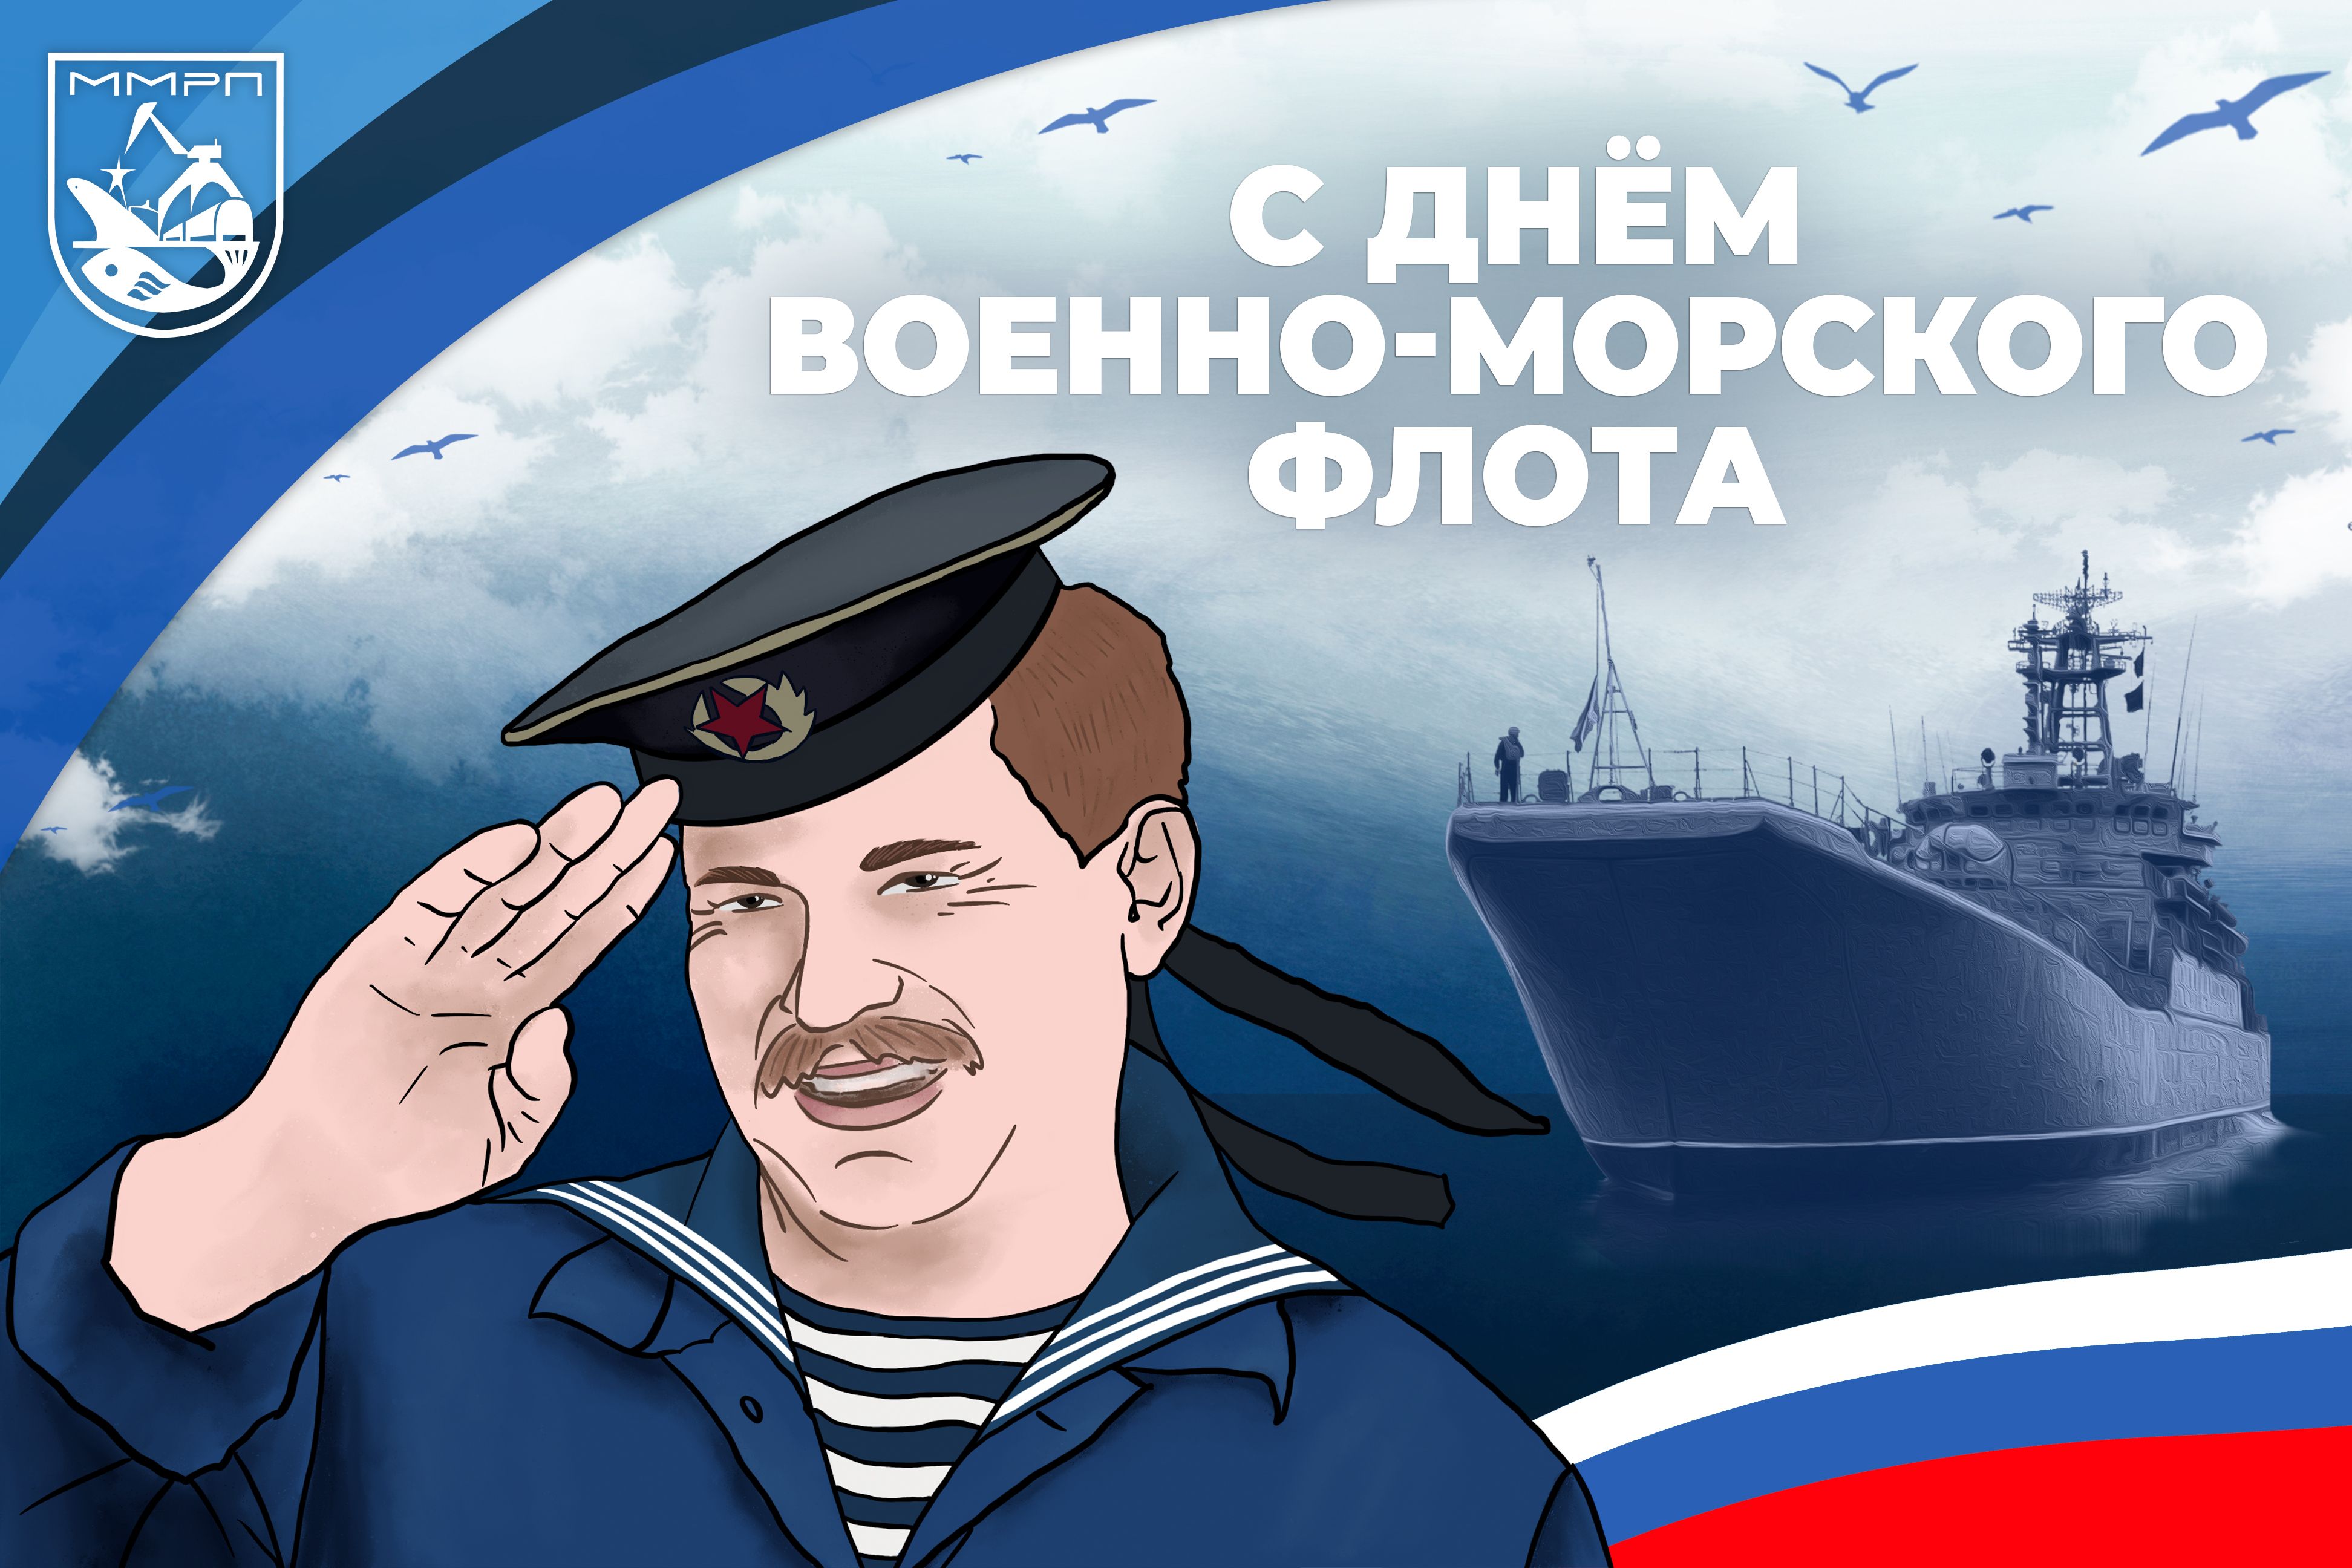 Мурманский морской рыбный порт поздравляет с Днем Военно-морского флота России